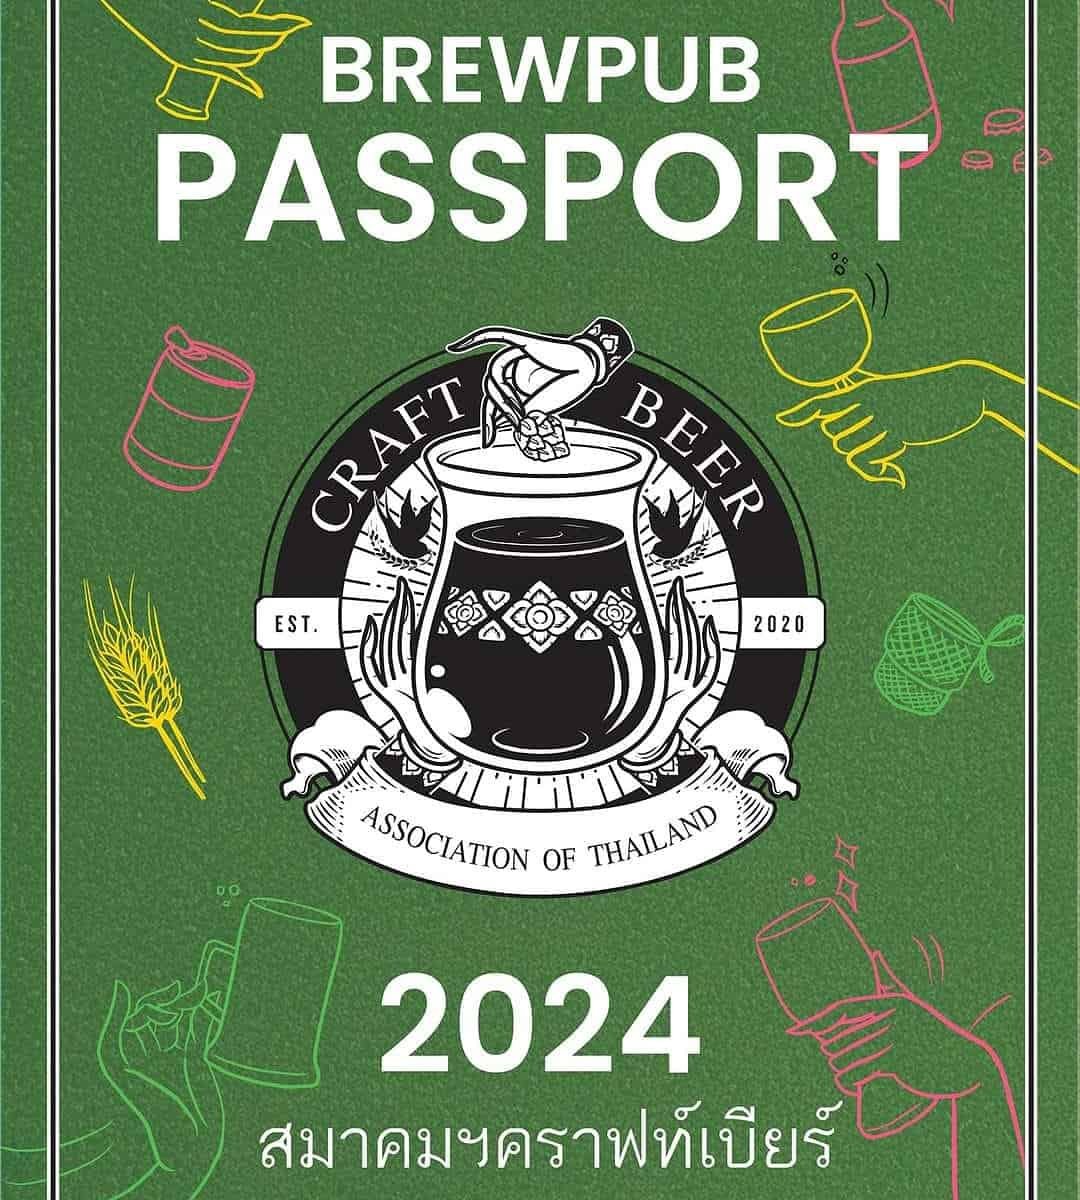 Brewpub Passport image by Craft Beer Association of Thailand